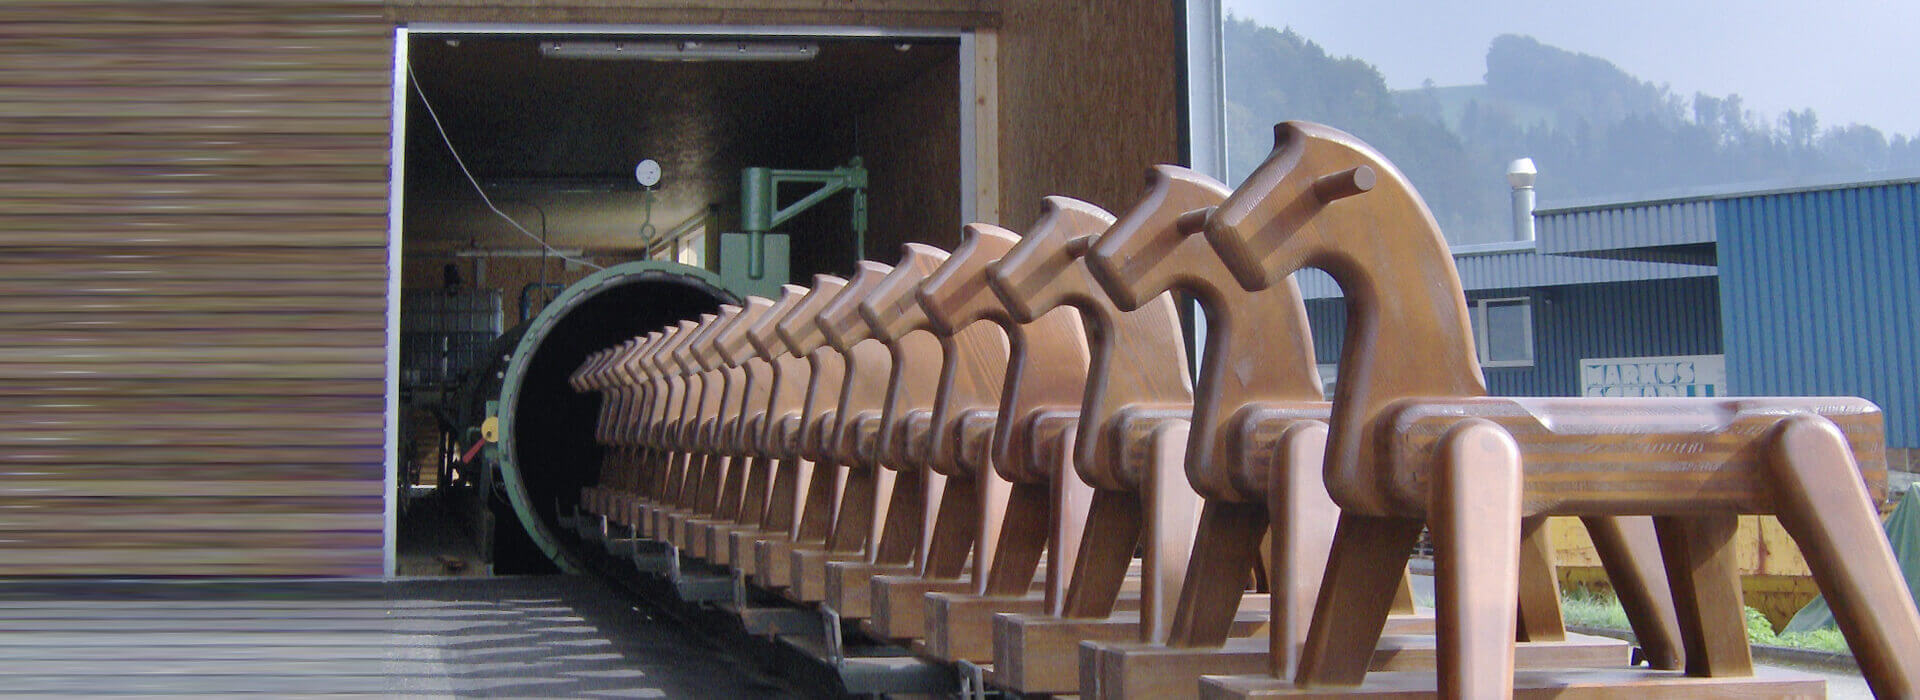 Holz-Imprägnieranlage der Firma Scholz Maschinenbau